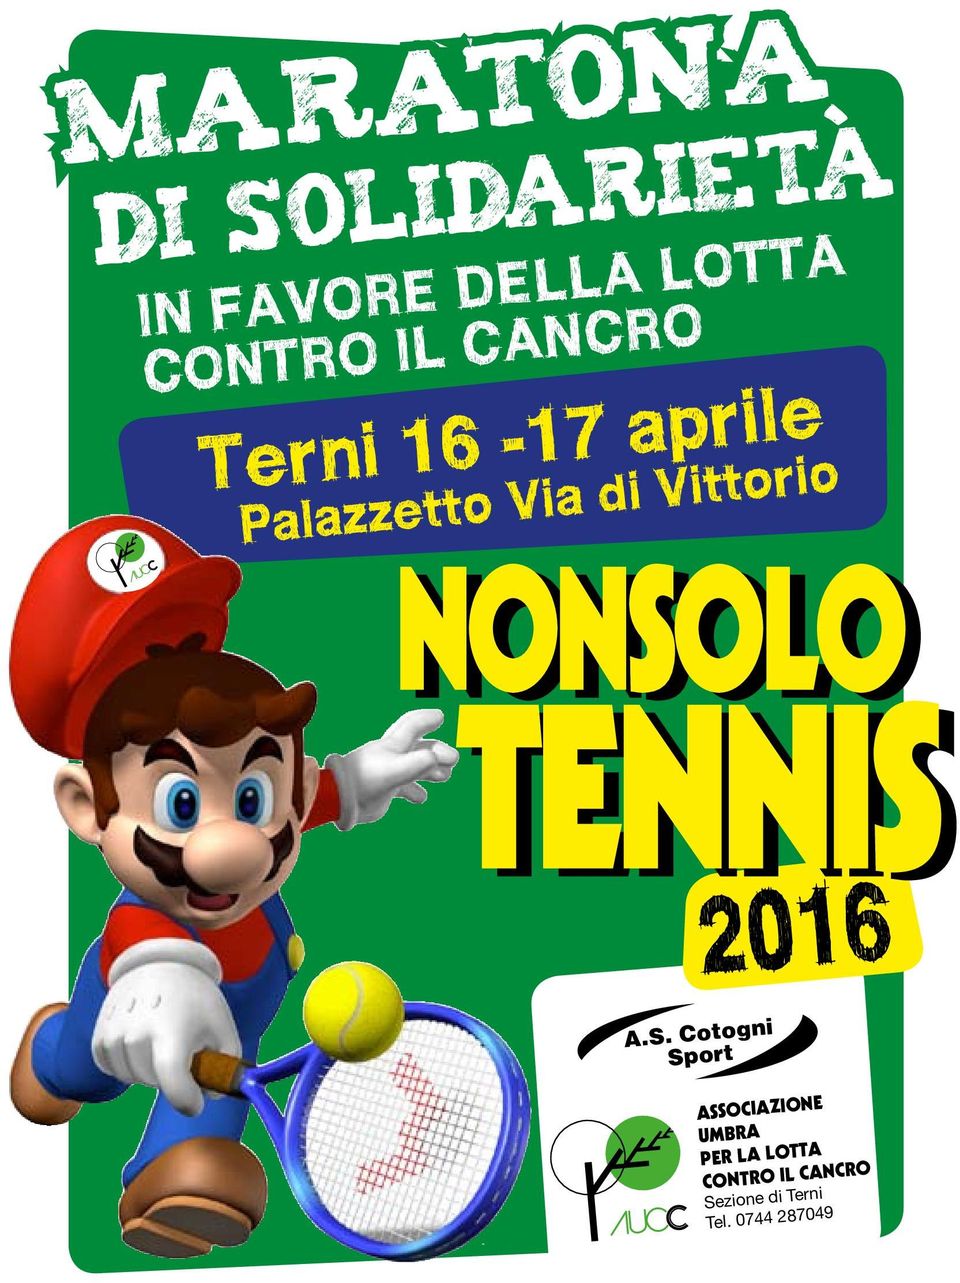 NONSOLO TENNIS 2016 A.S. Cotogni Sport ASSOCIAZIONE UMBRA